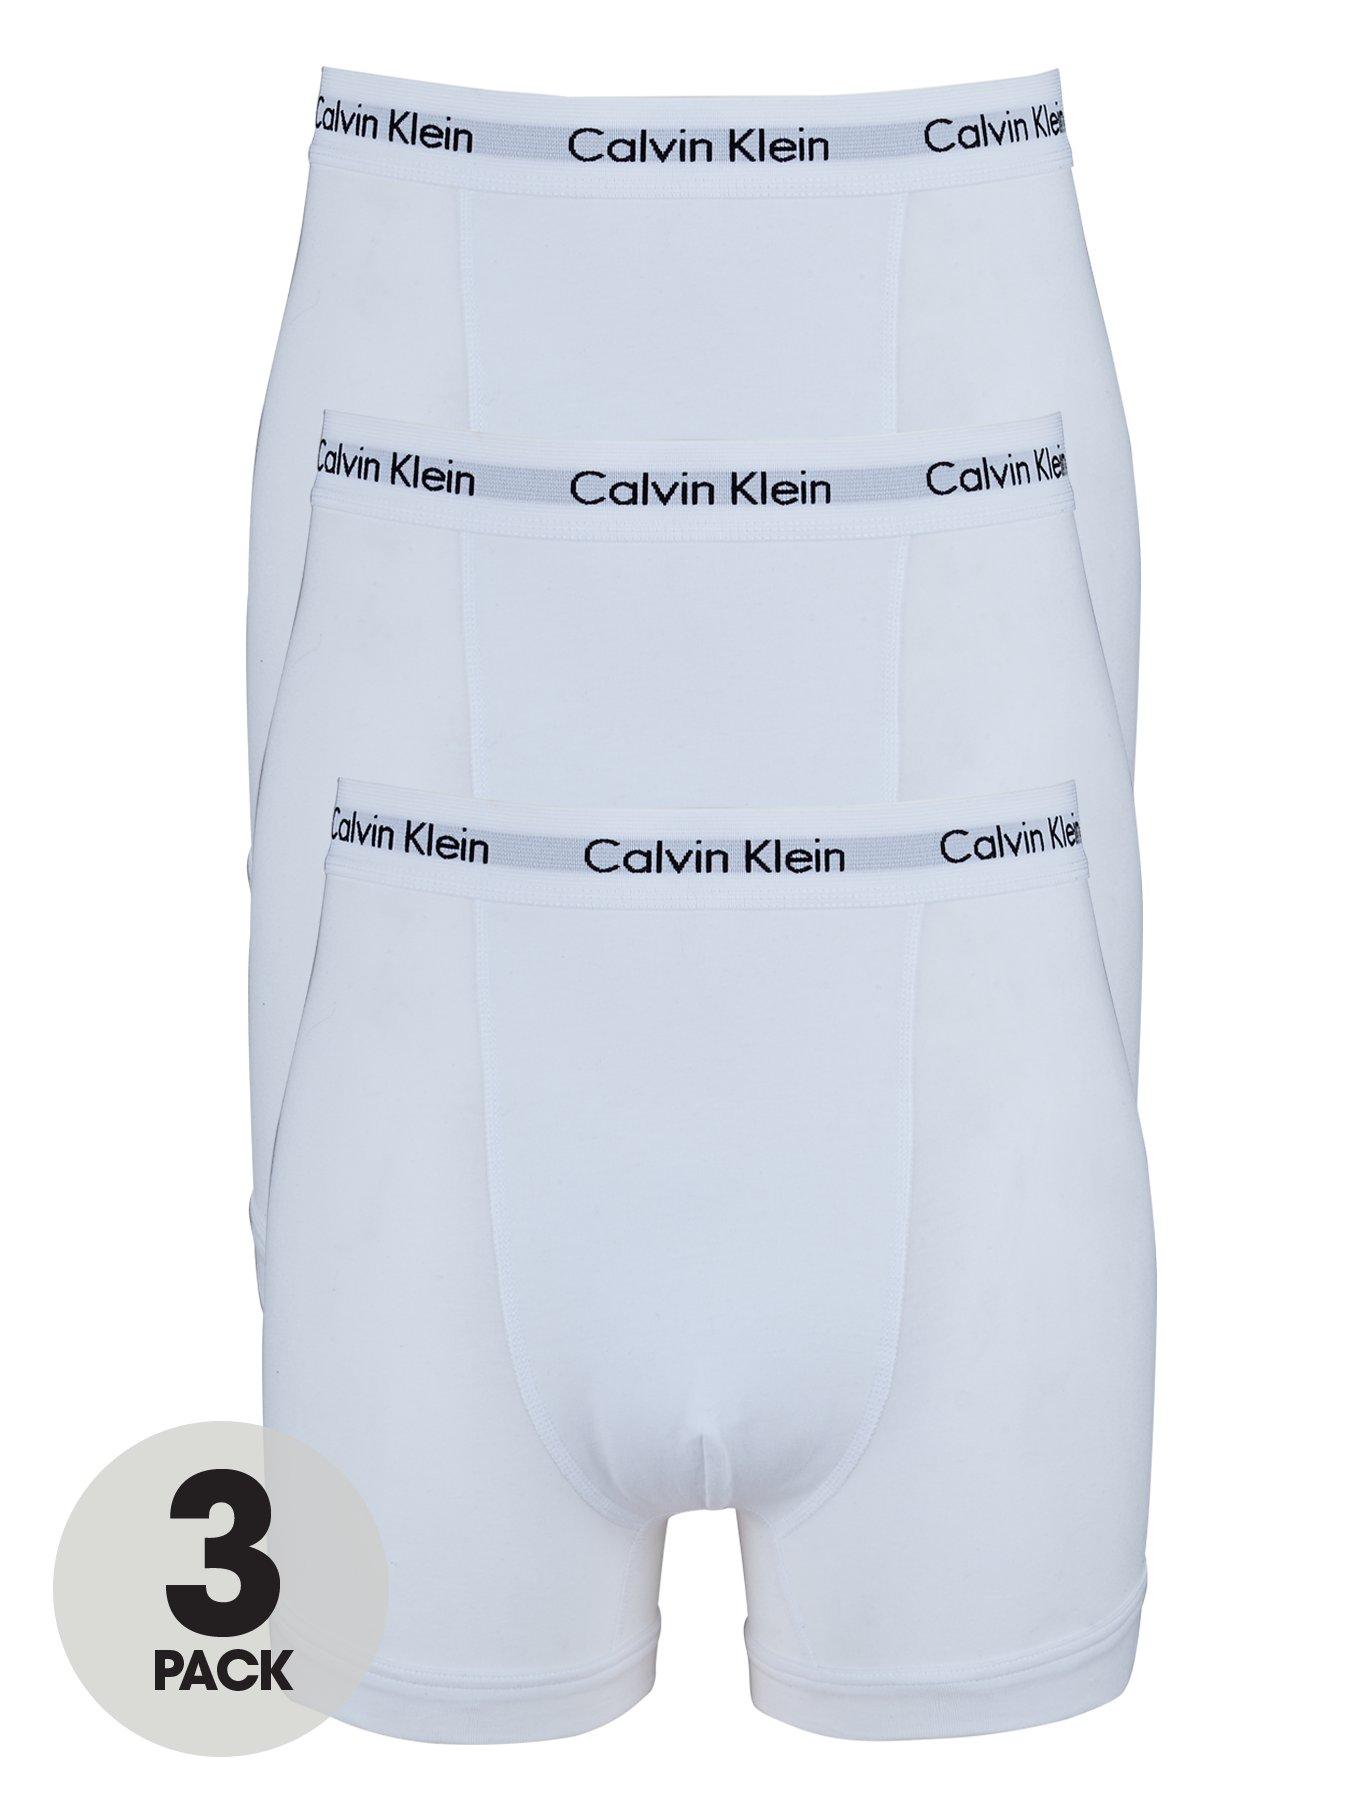 Calvin Klein Core 3 Pack Trunks - White | Very.co.uk